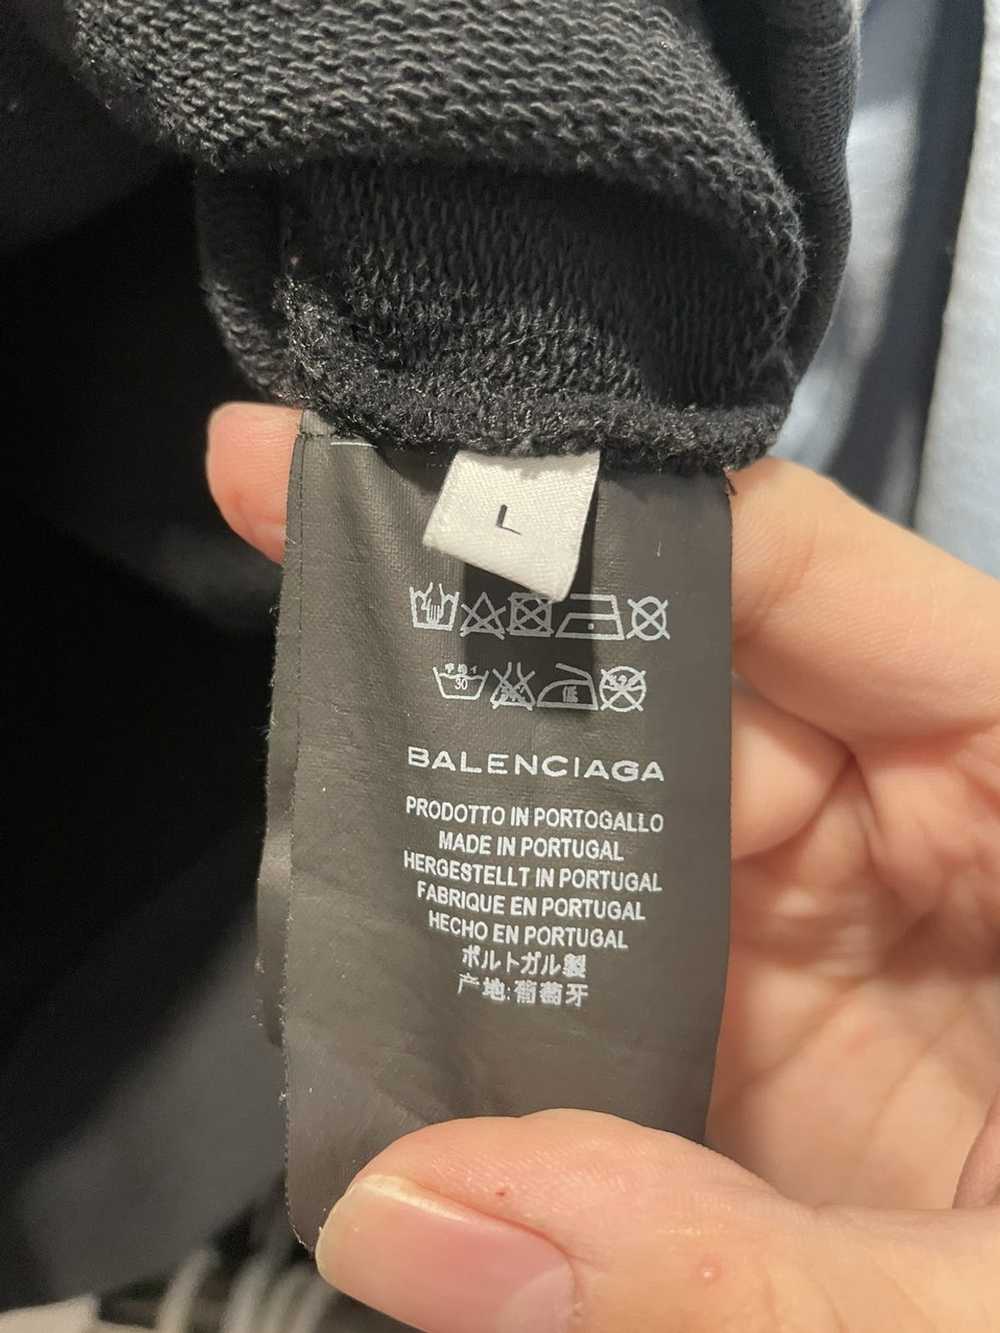 Balenciaga Balenciaga Campaign hoodie 2017 - image 11